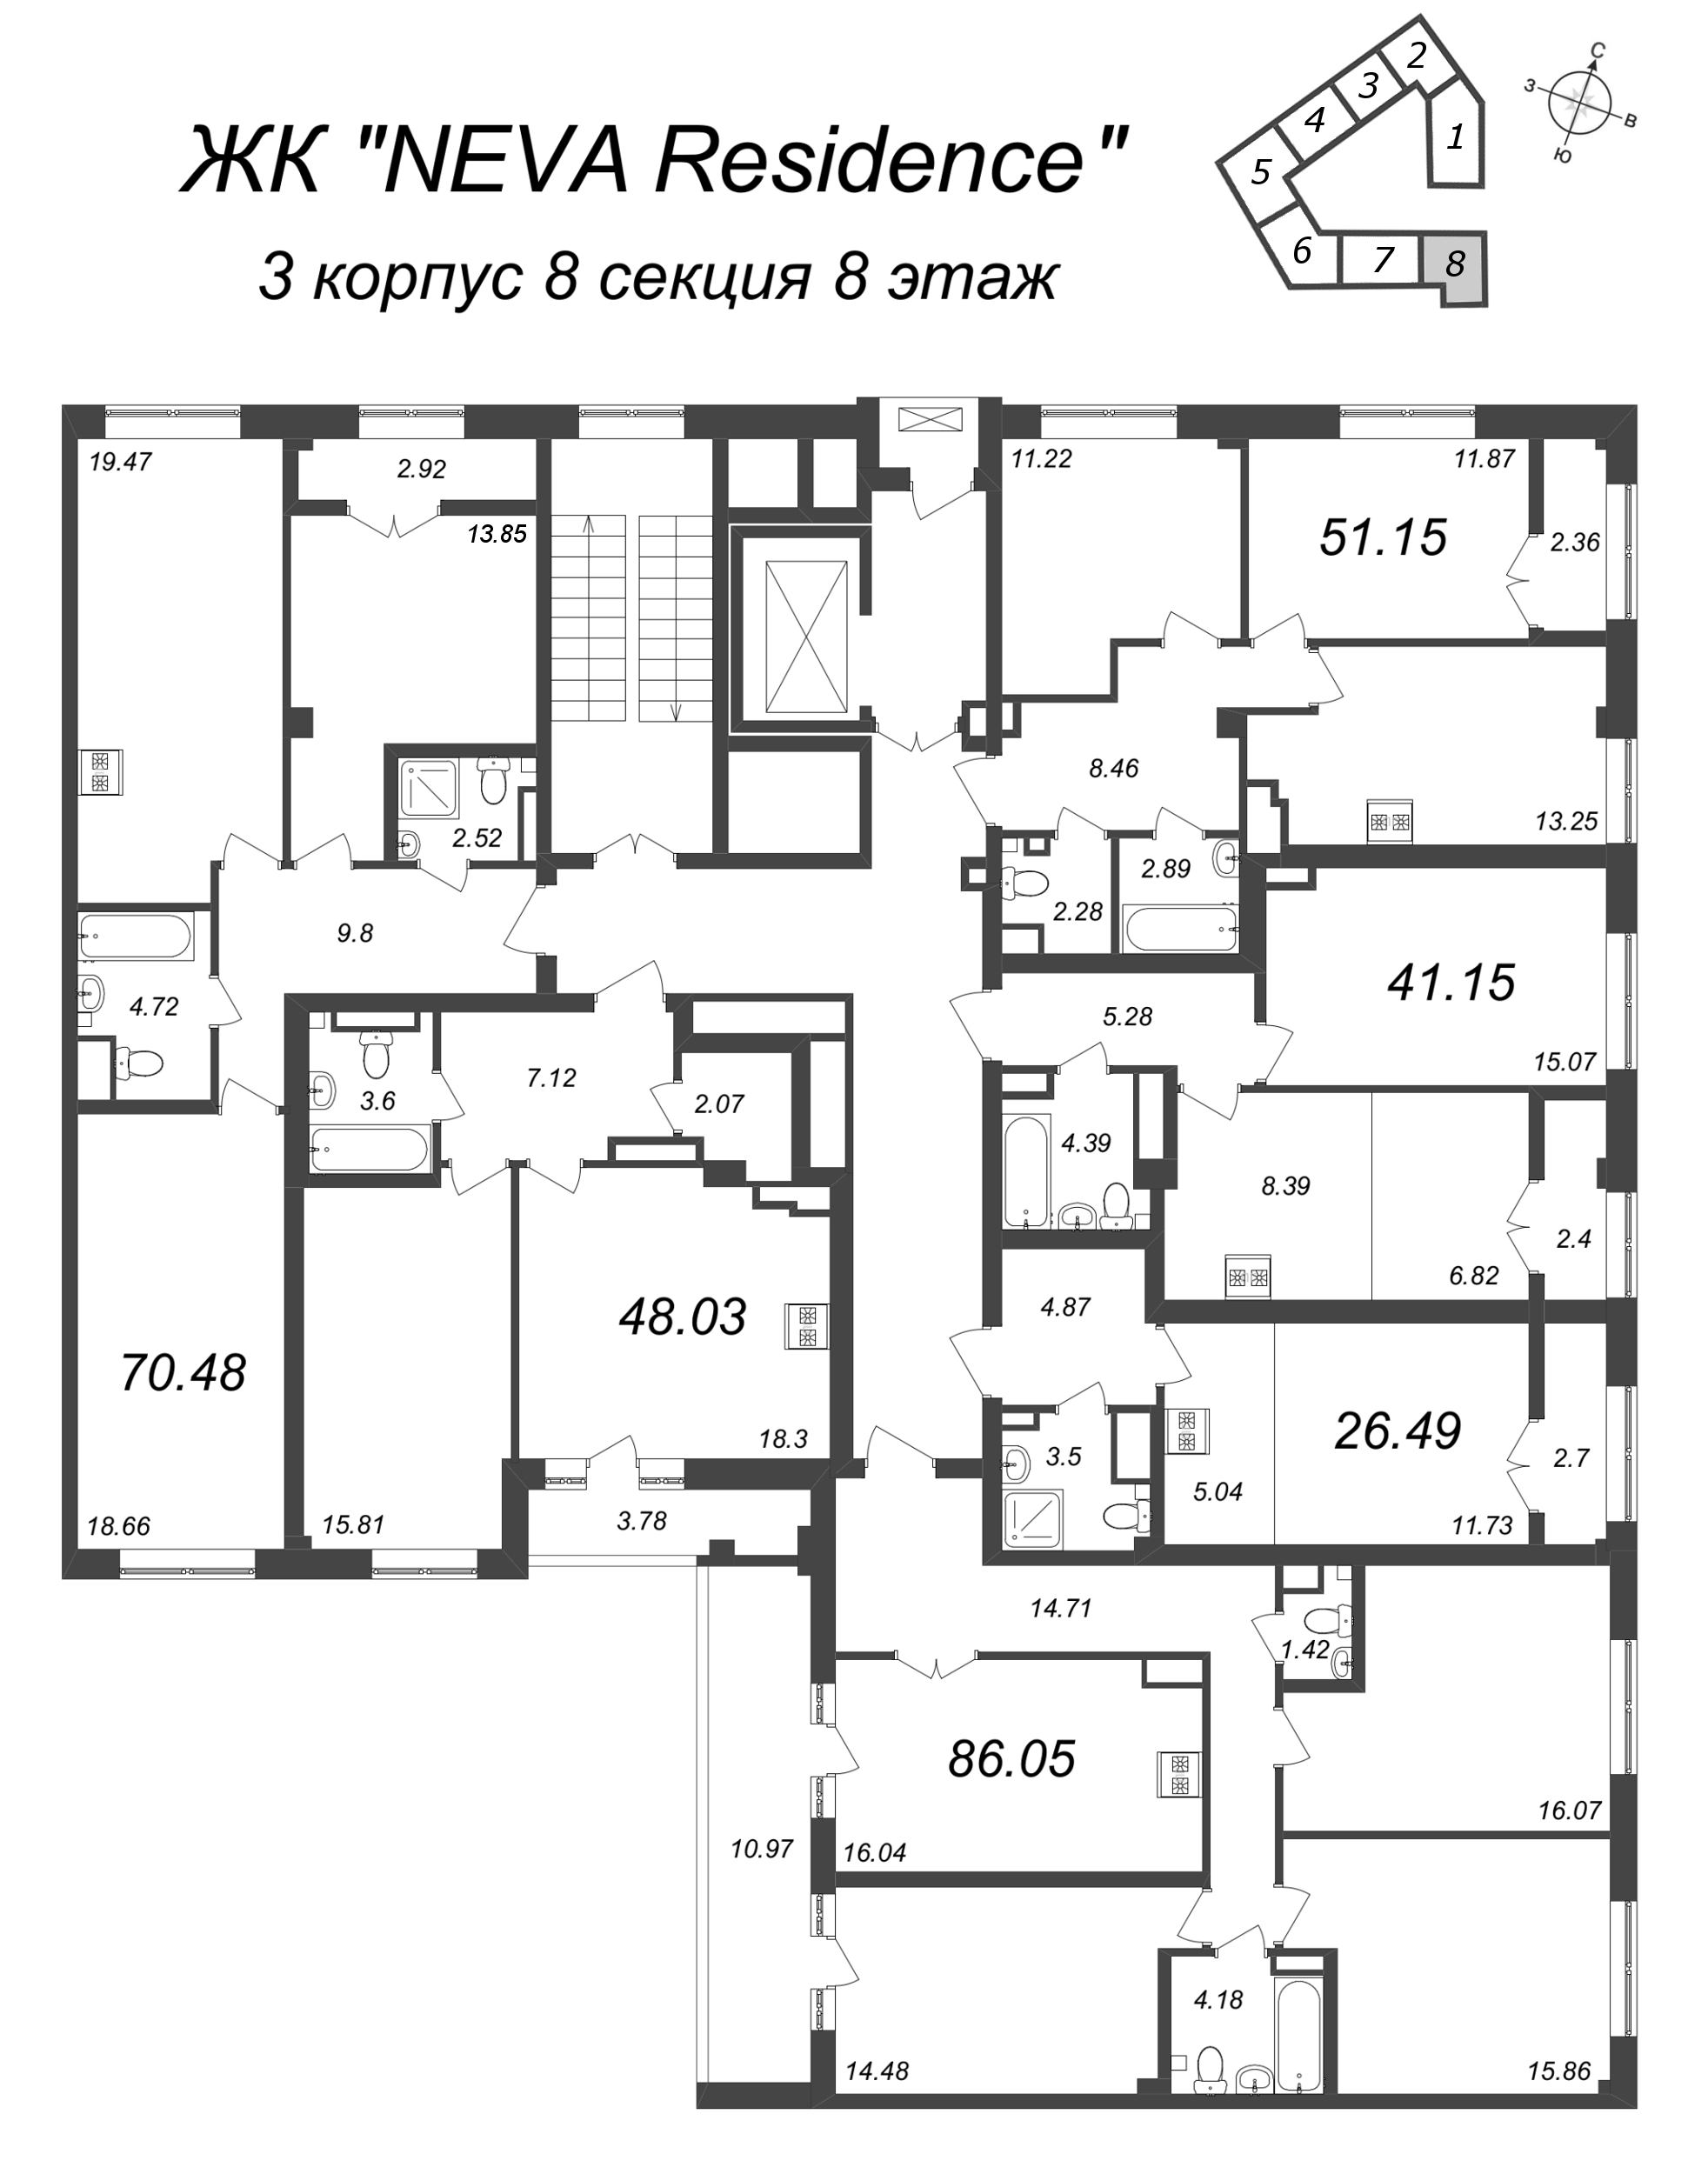 Квартира-студия, 26.49 м² в ЖК "Neva Residence" - планировка этажа